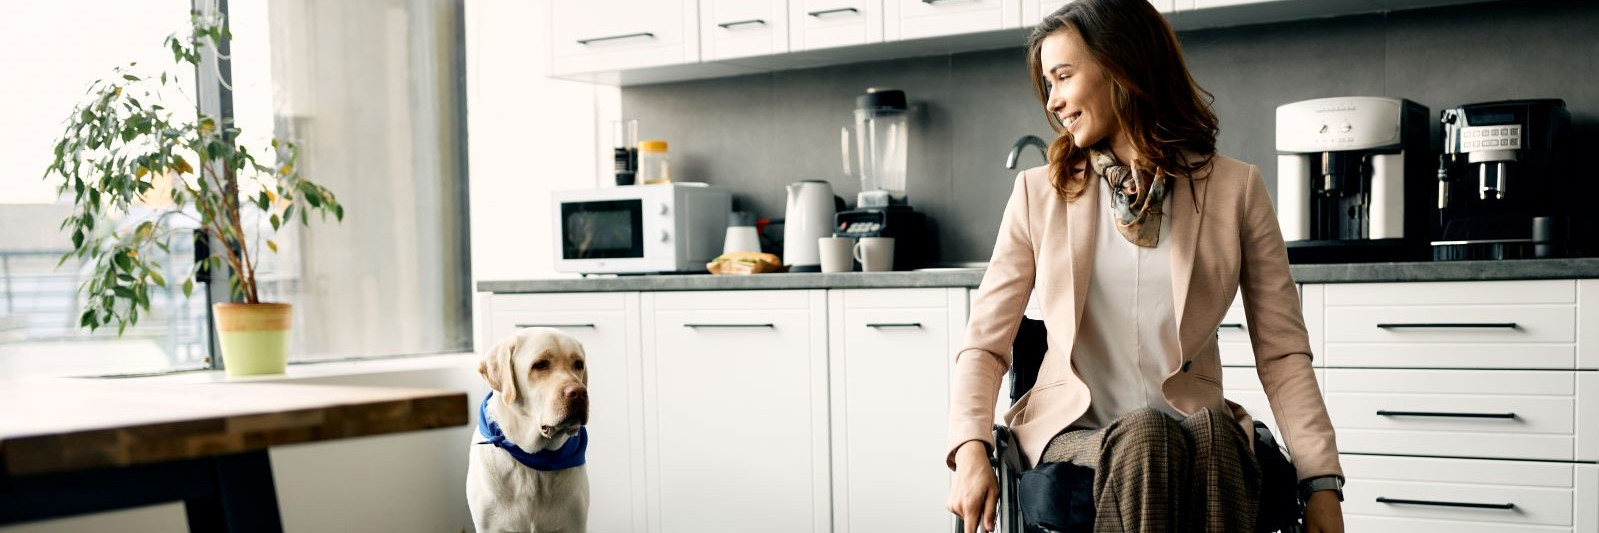 Frau im Rollstuhl mit einem Hund in ihrer Wohnung